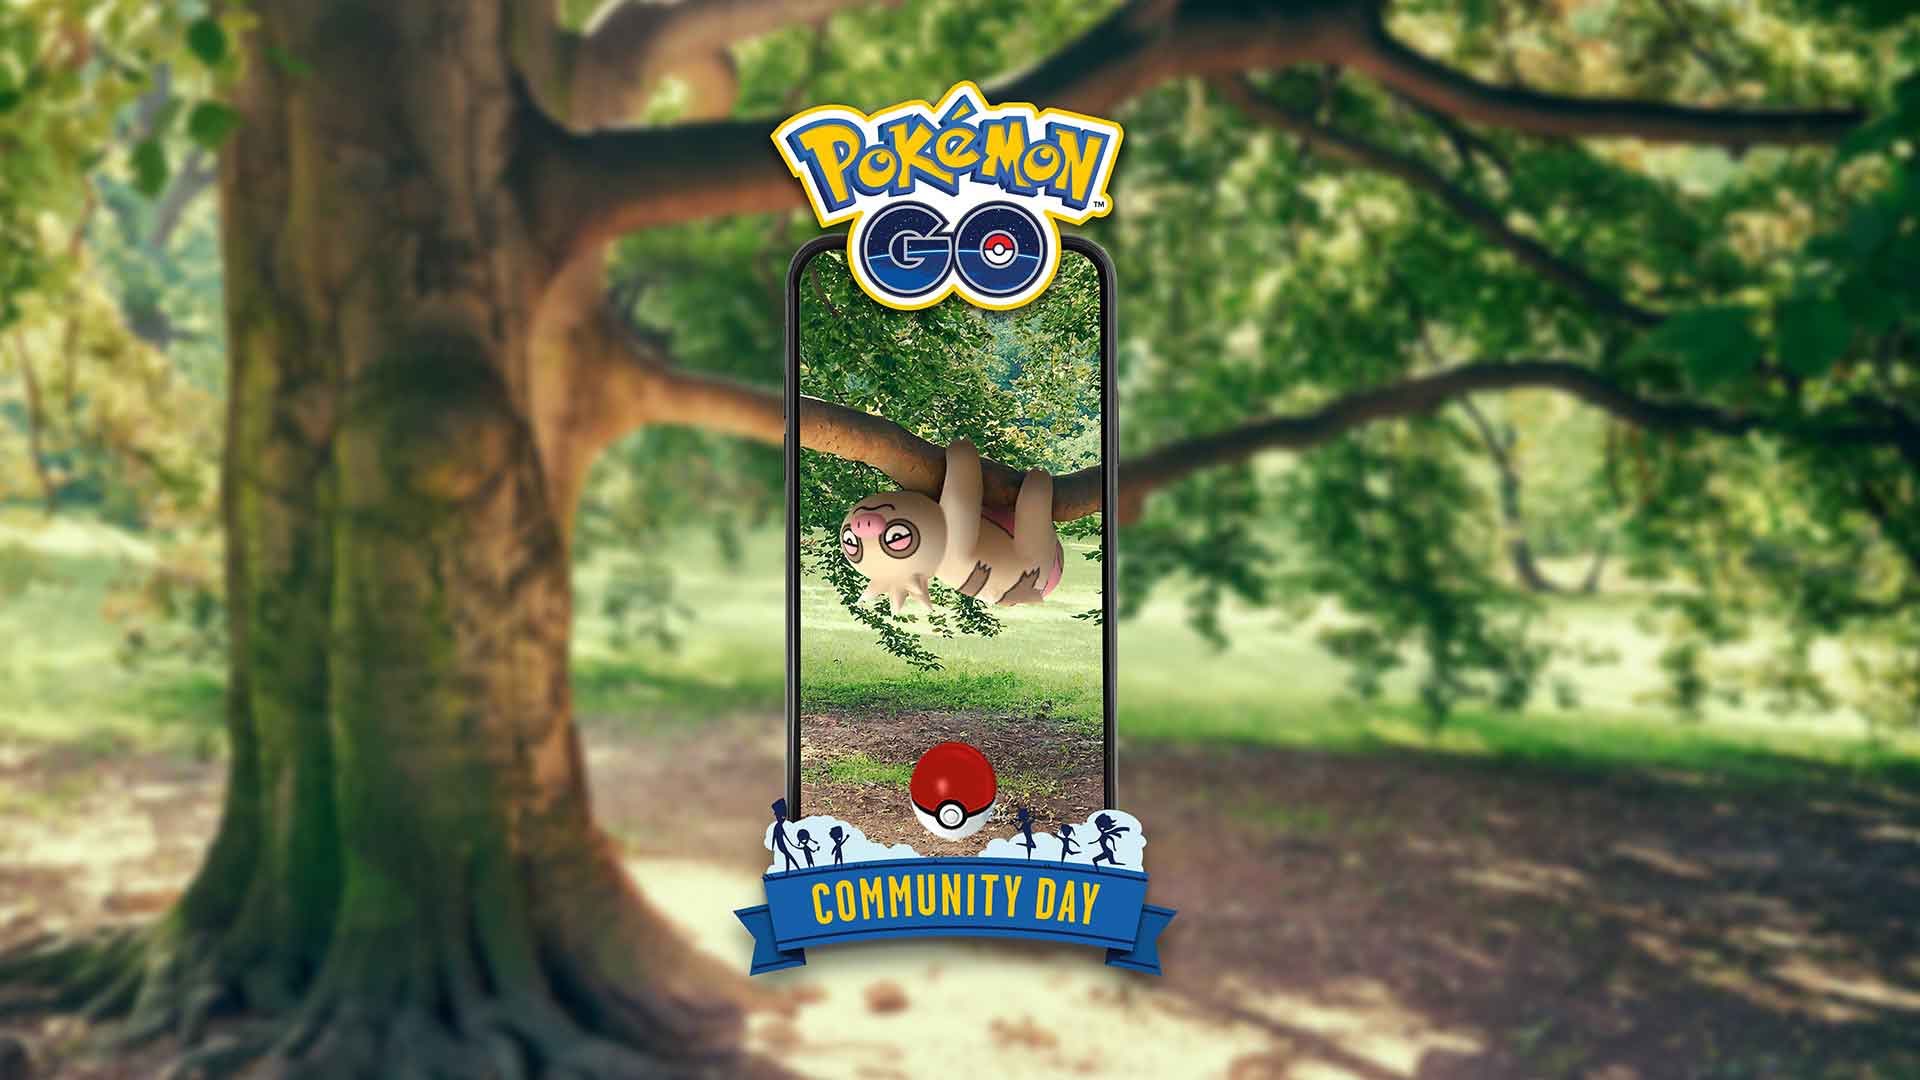 Pokemon Go Community Day August 2019